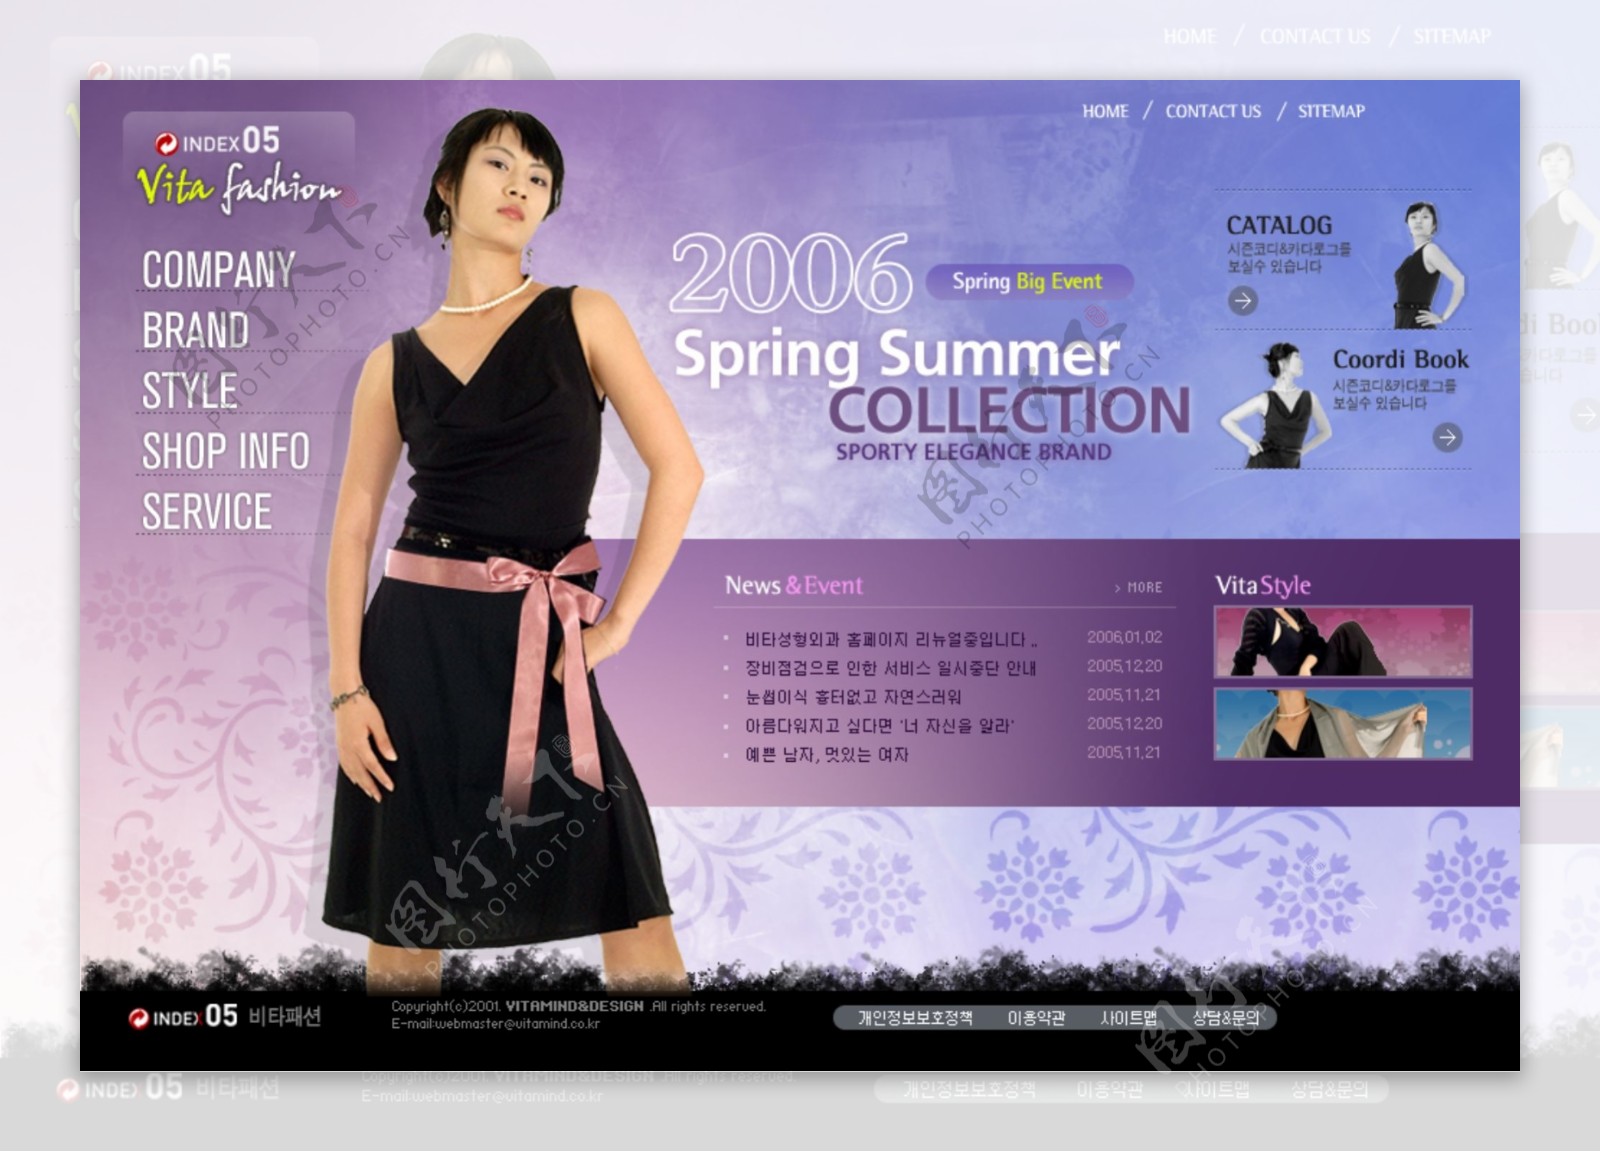 春夏服装展示网页模板